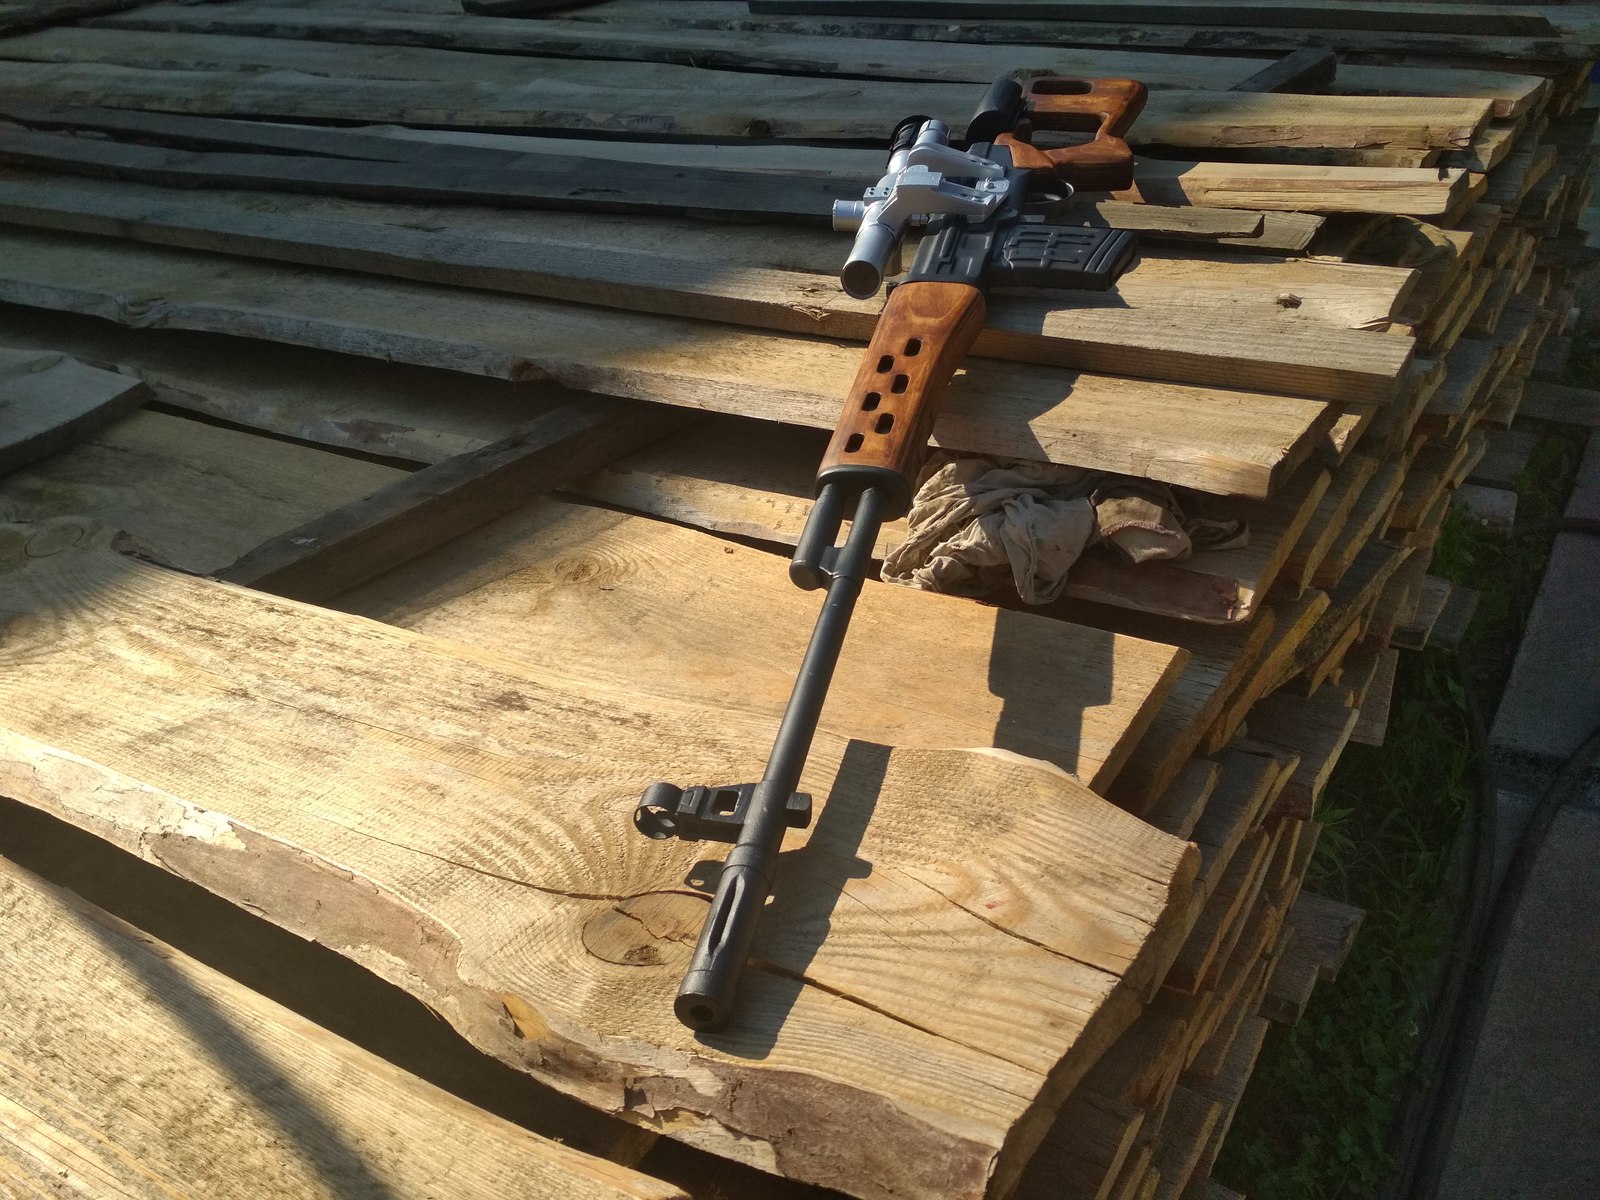 Деревянная снайперская винтовка своими руками